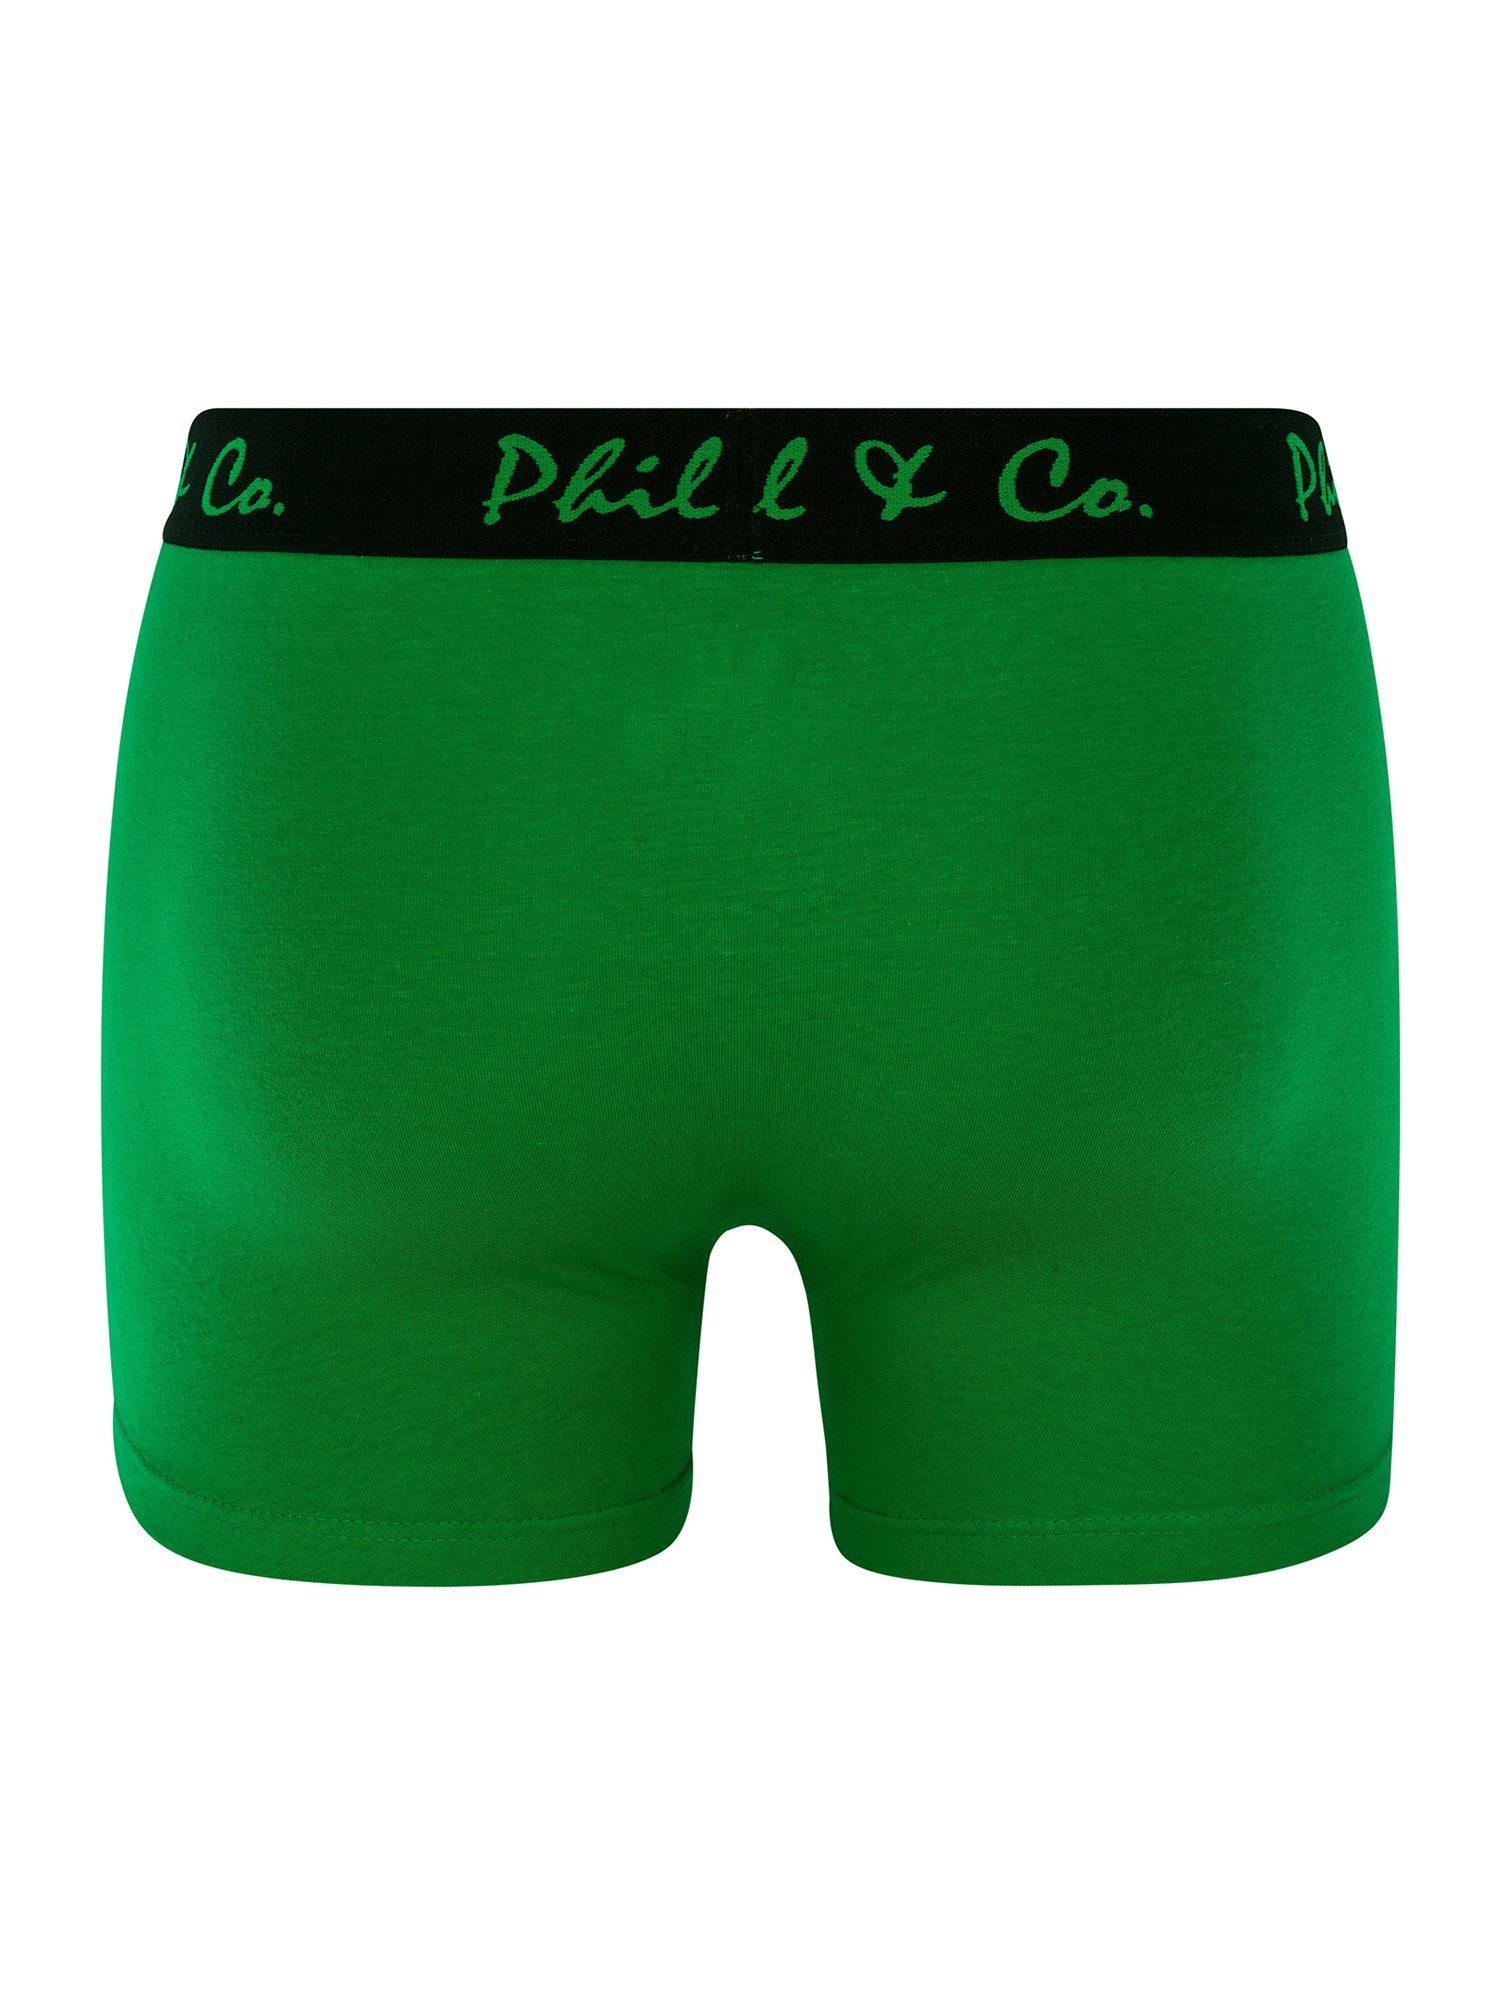 Phil & Co. Retro Pants grün-anthrazit Jersey (6-St)